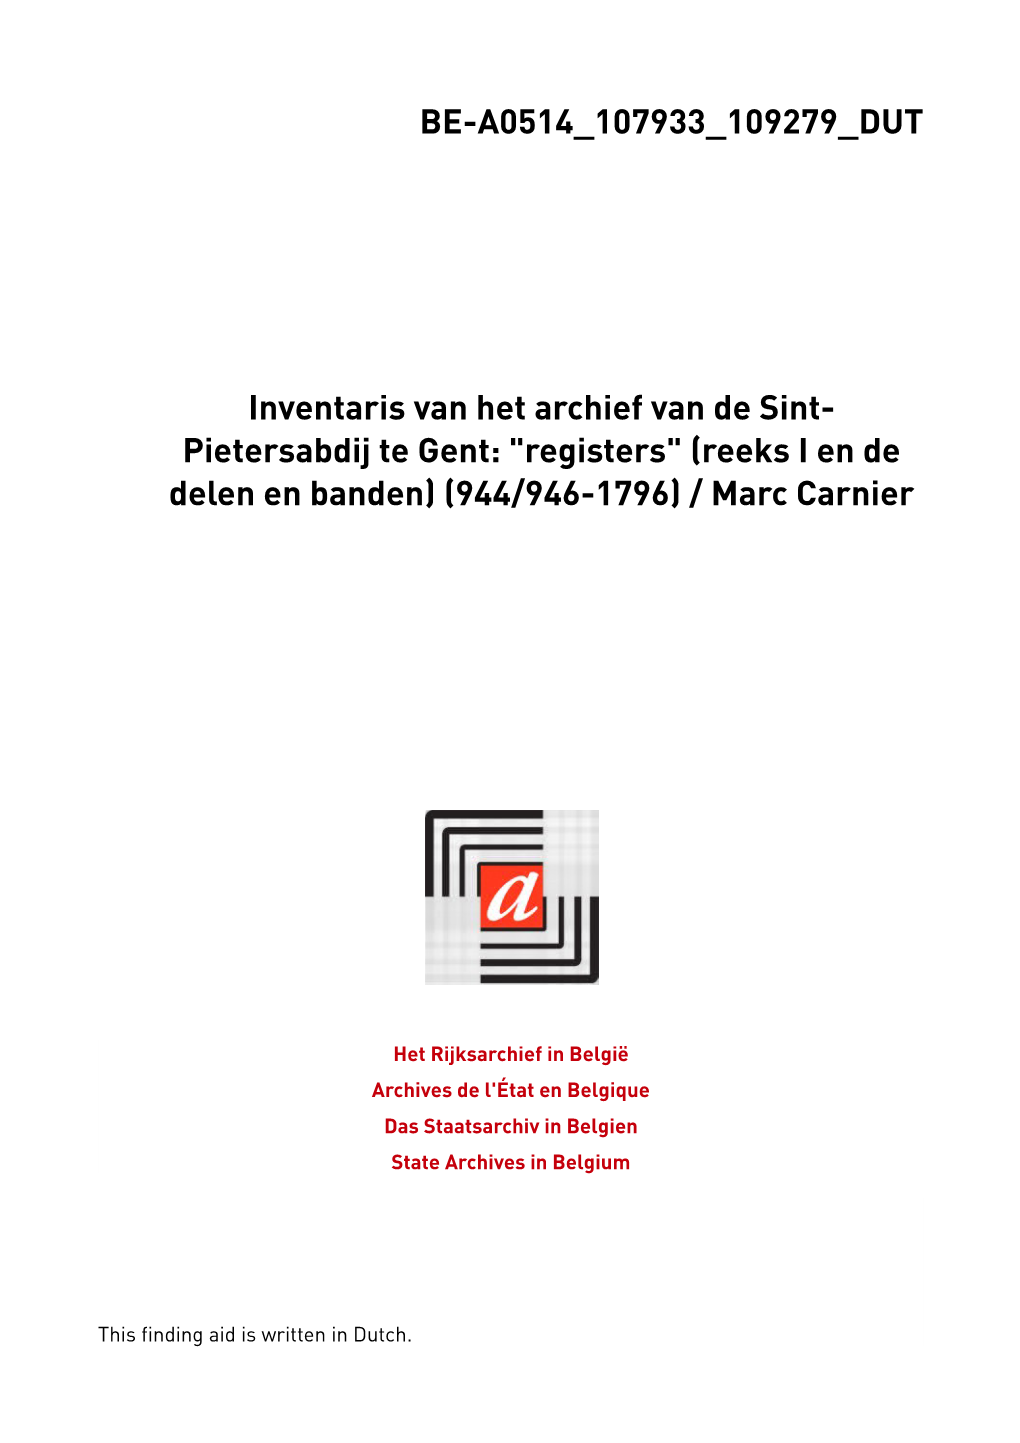 Sint-Pietersabdij. Gent. Deel I